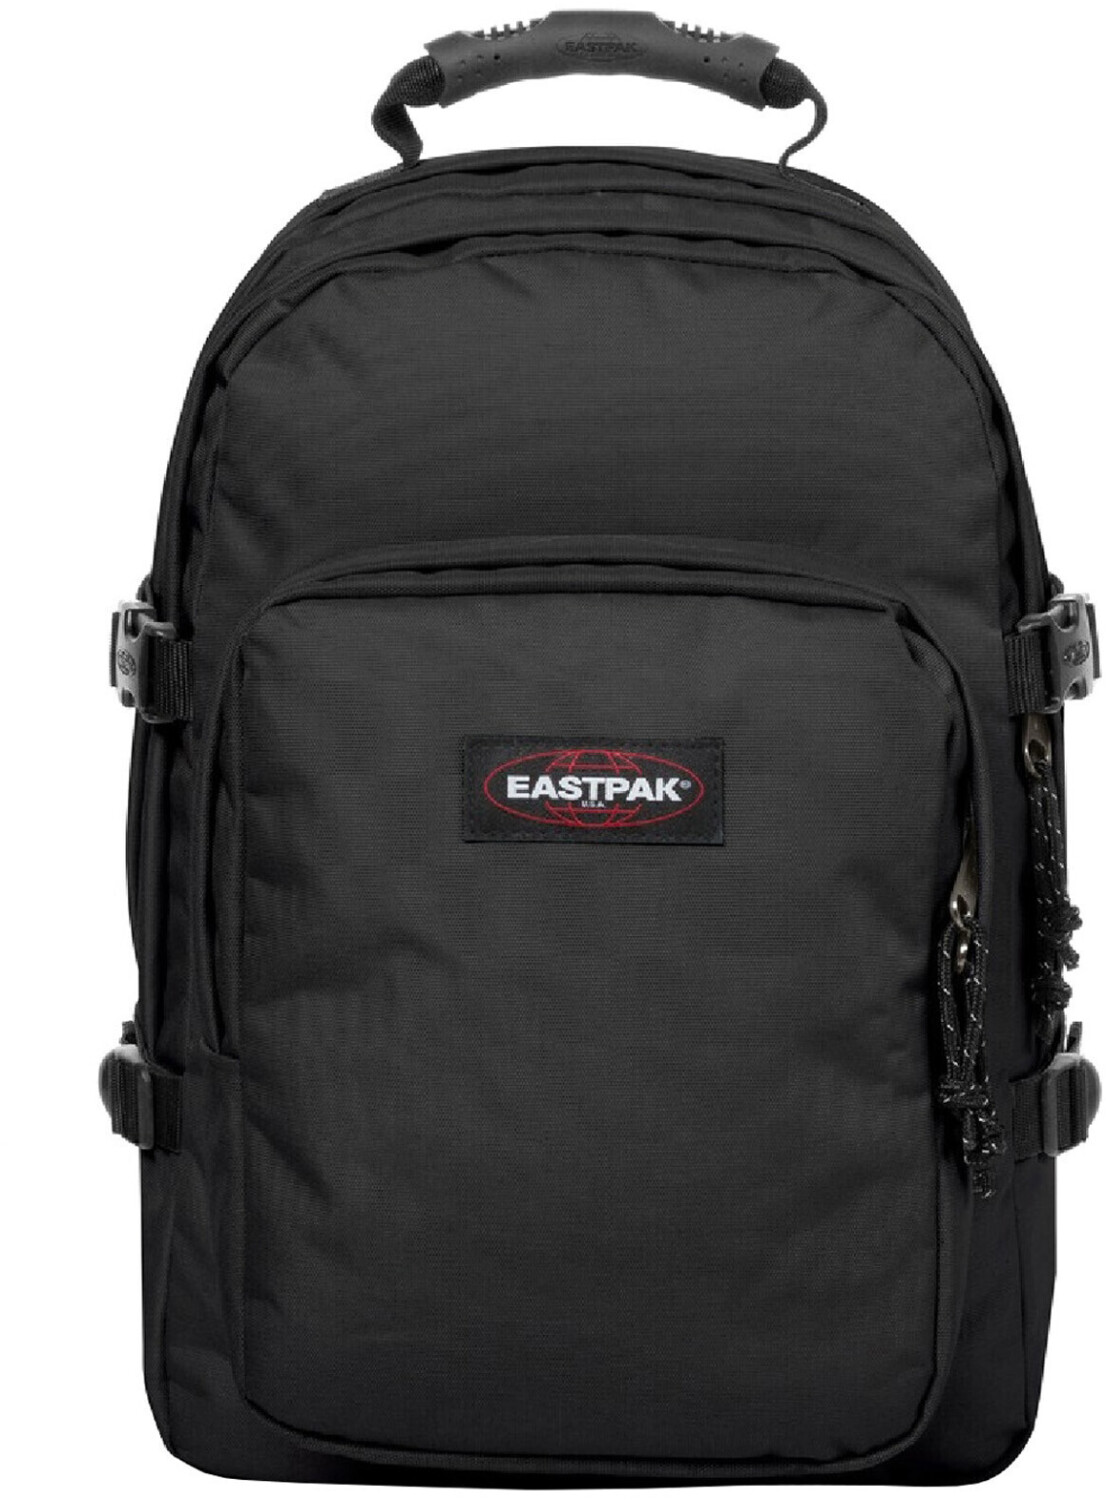 Eastpak Provider black